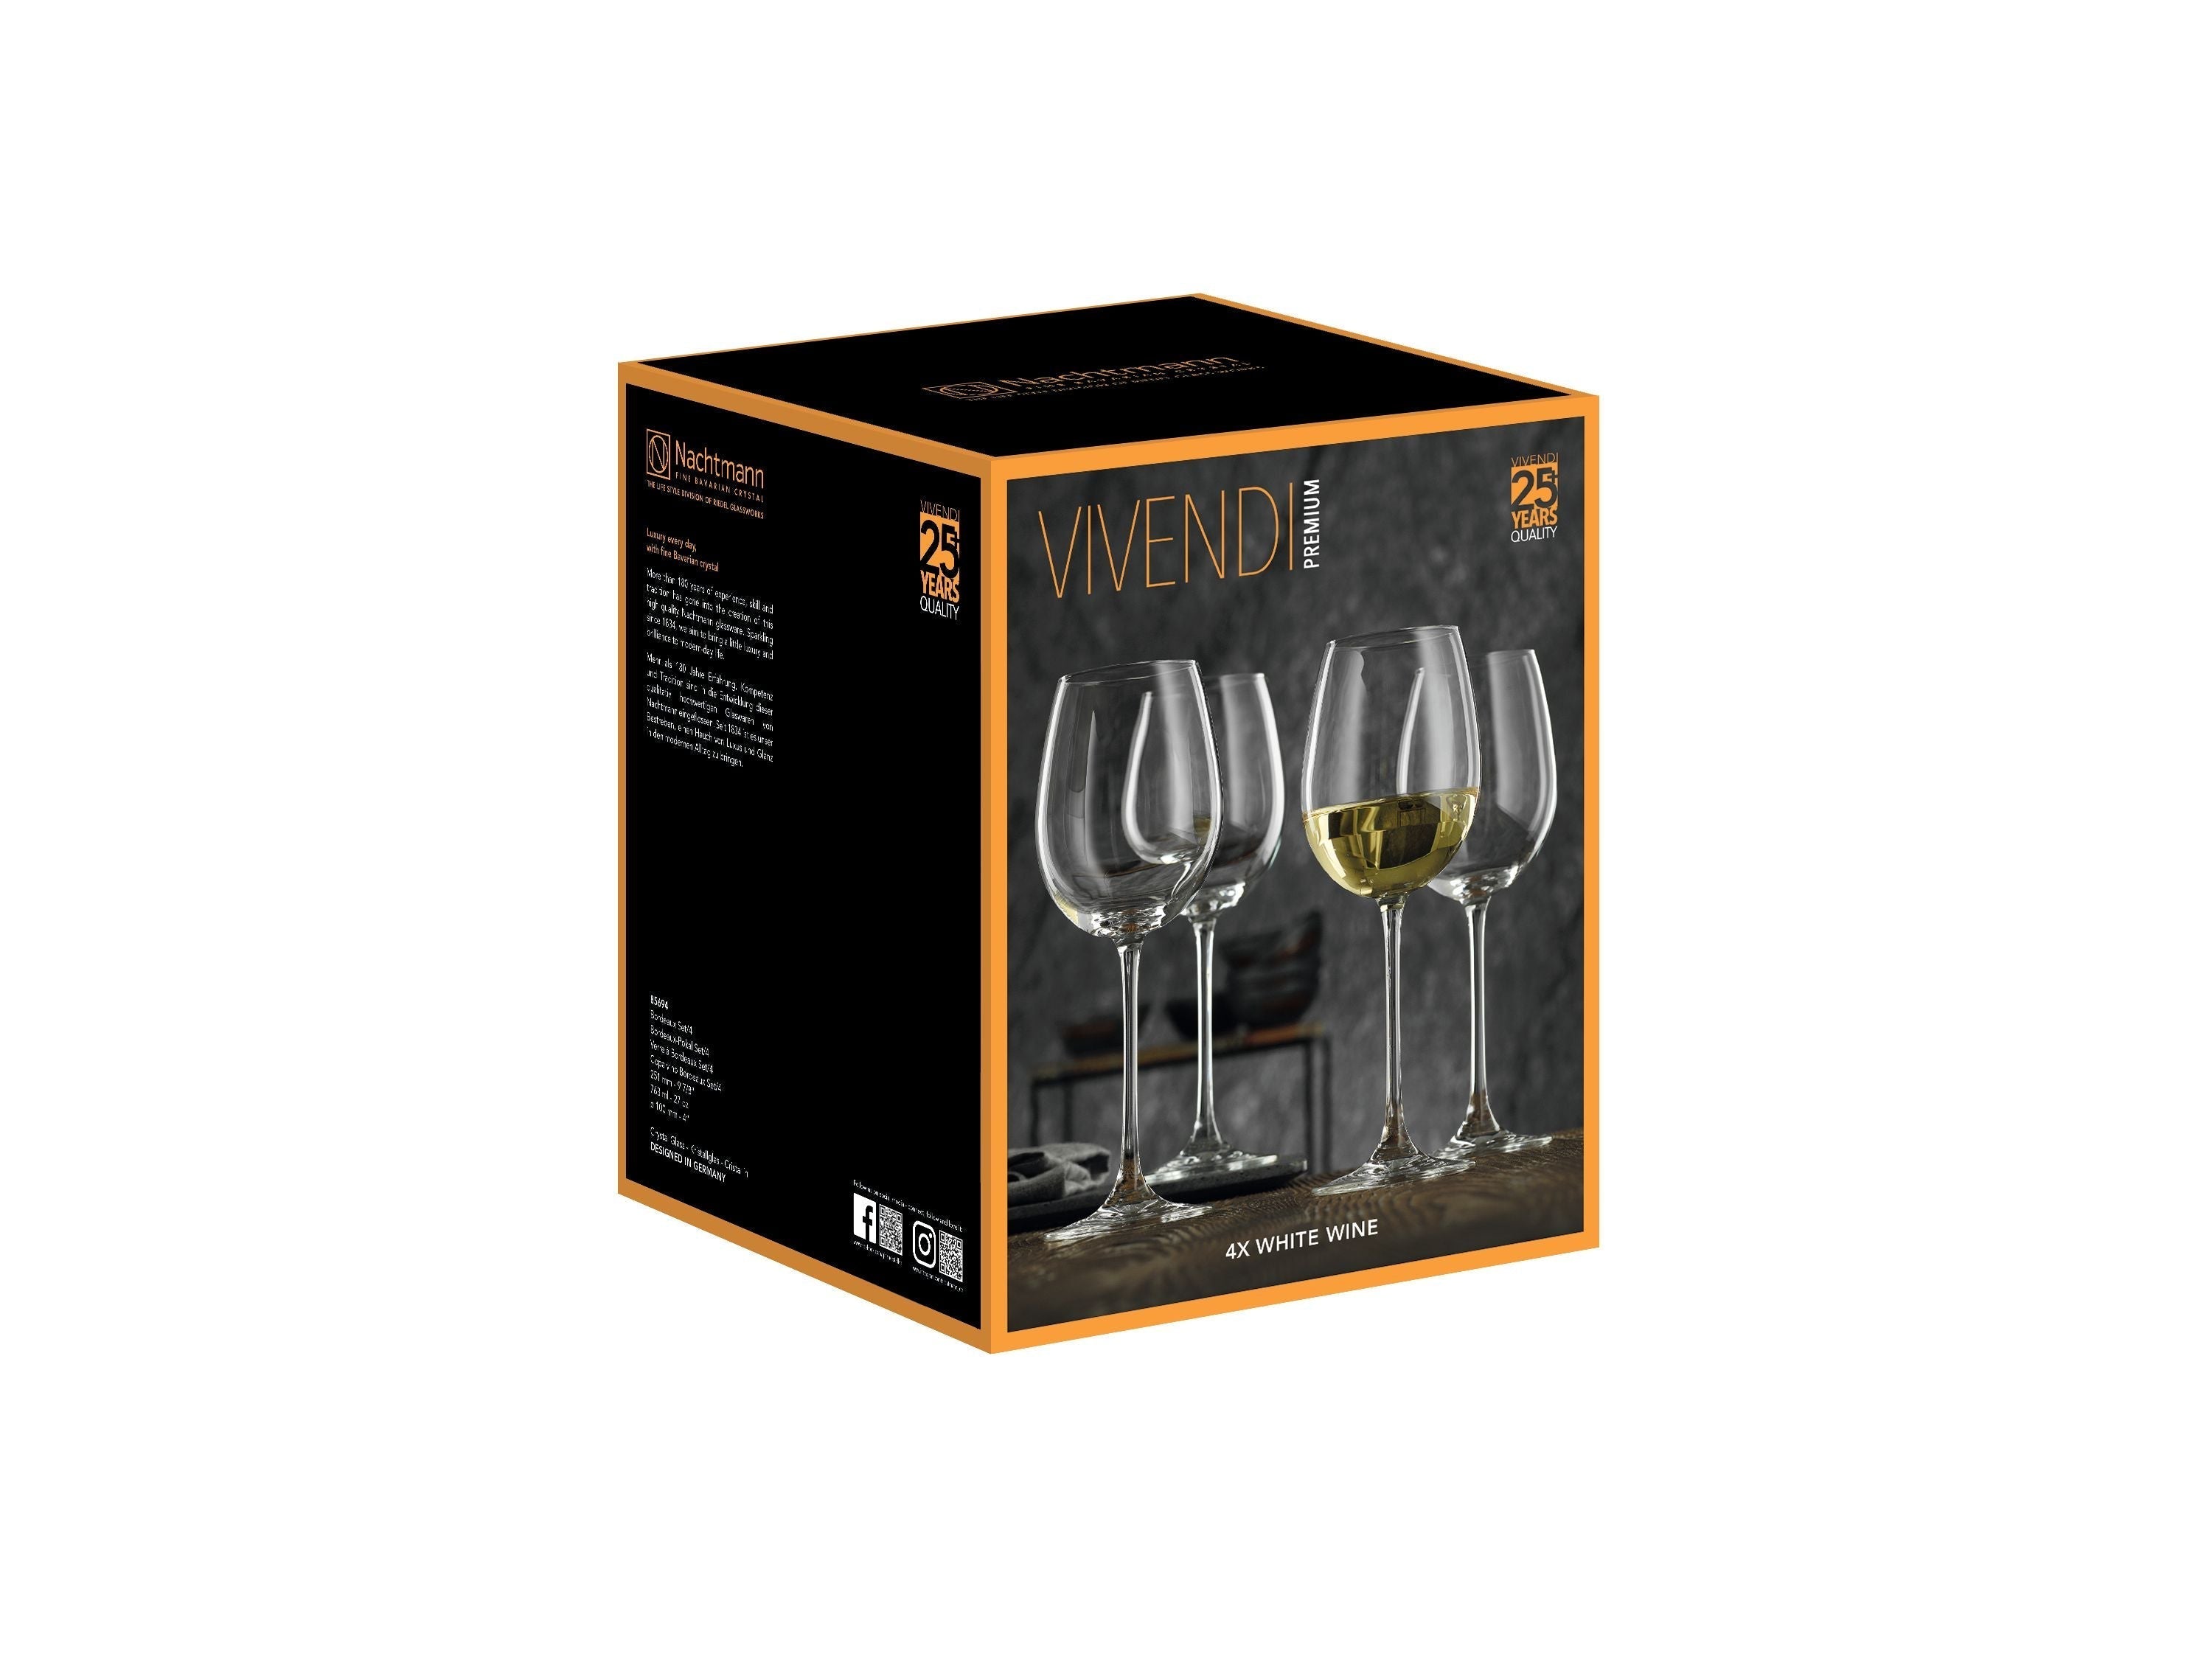 Nachtmann Vivendi Premium White Wine Glass 474 Ml, Set Of 4